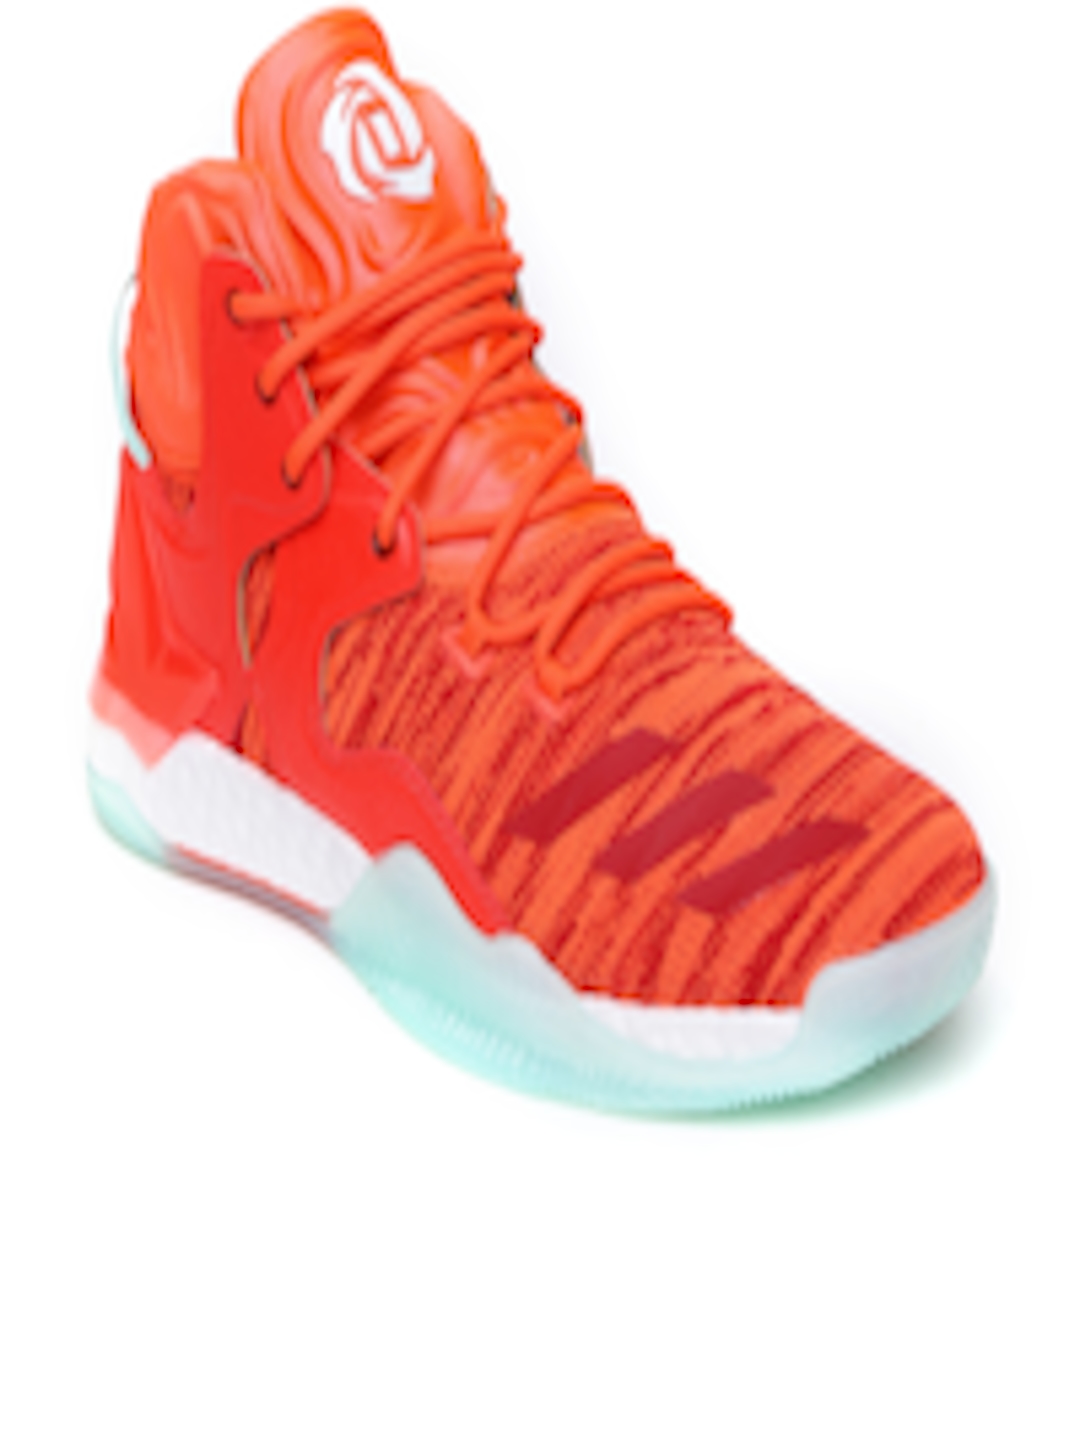 Buy ADIDAS Men Neon Orange Rose 7 Primeknit Basketball